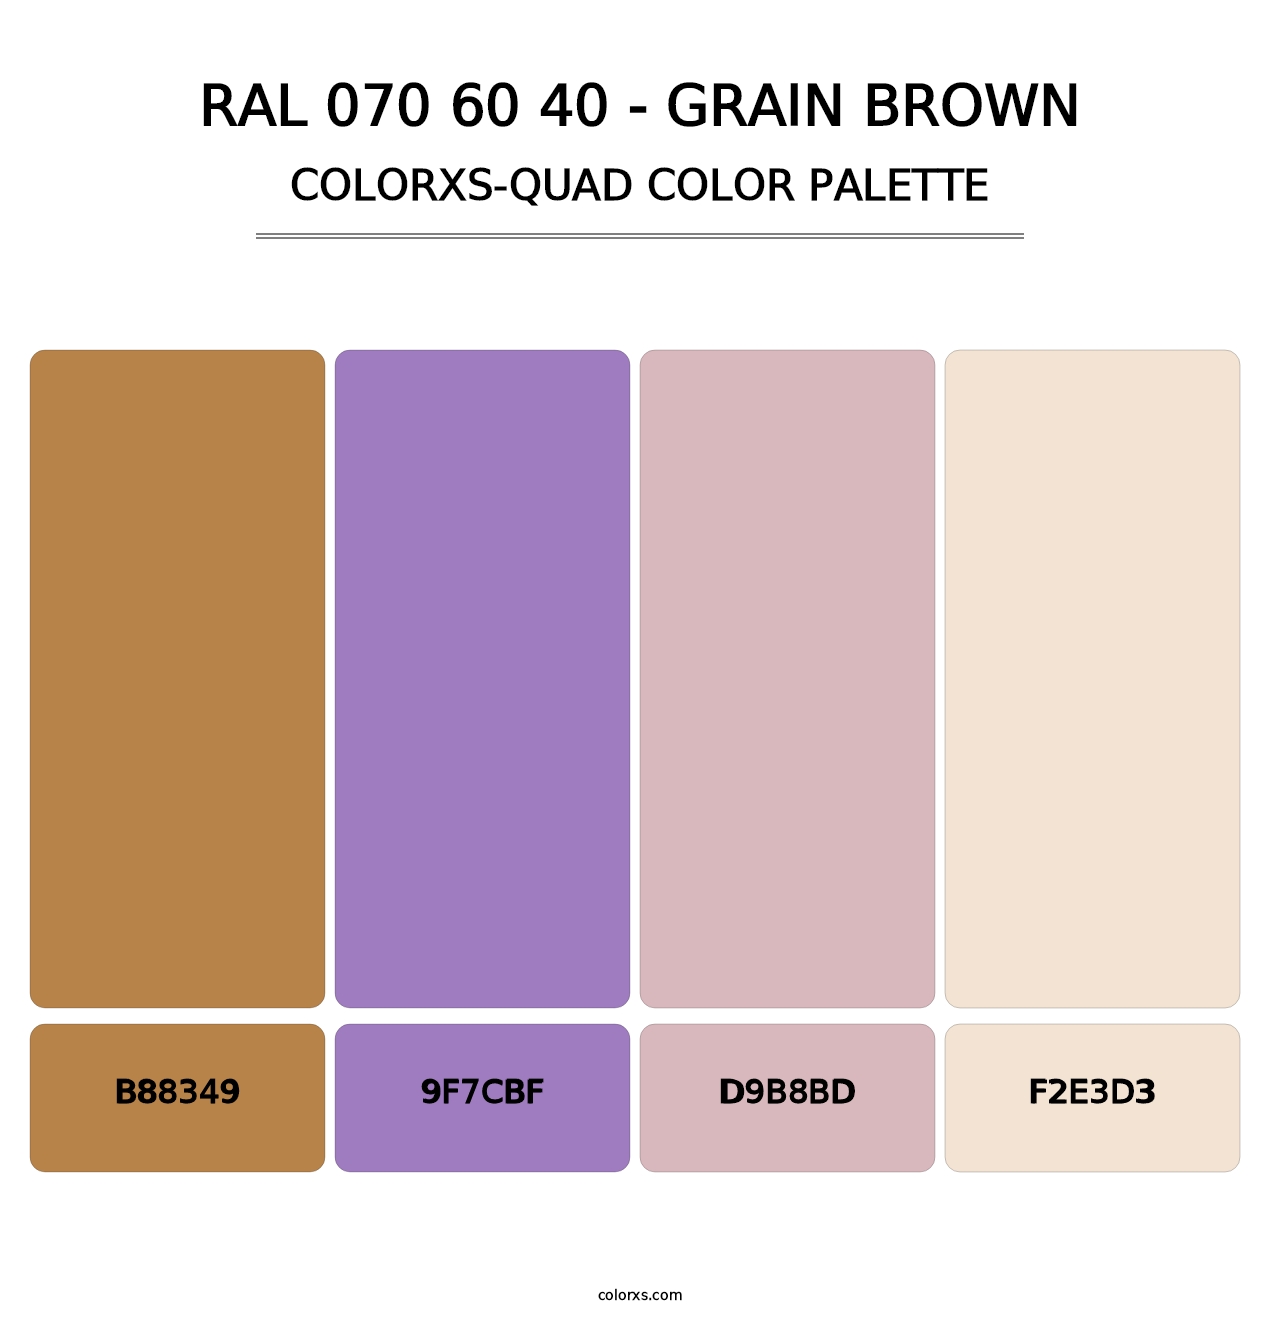 RAL 070 60 40 - Grain Brown - Colorxs Quad Palette